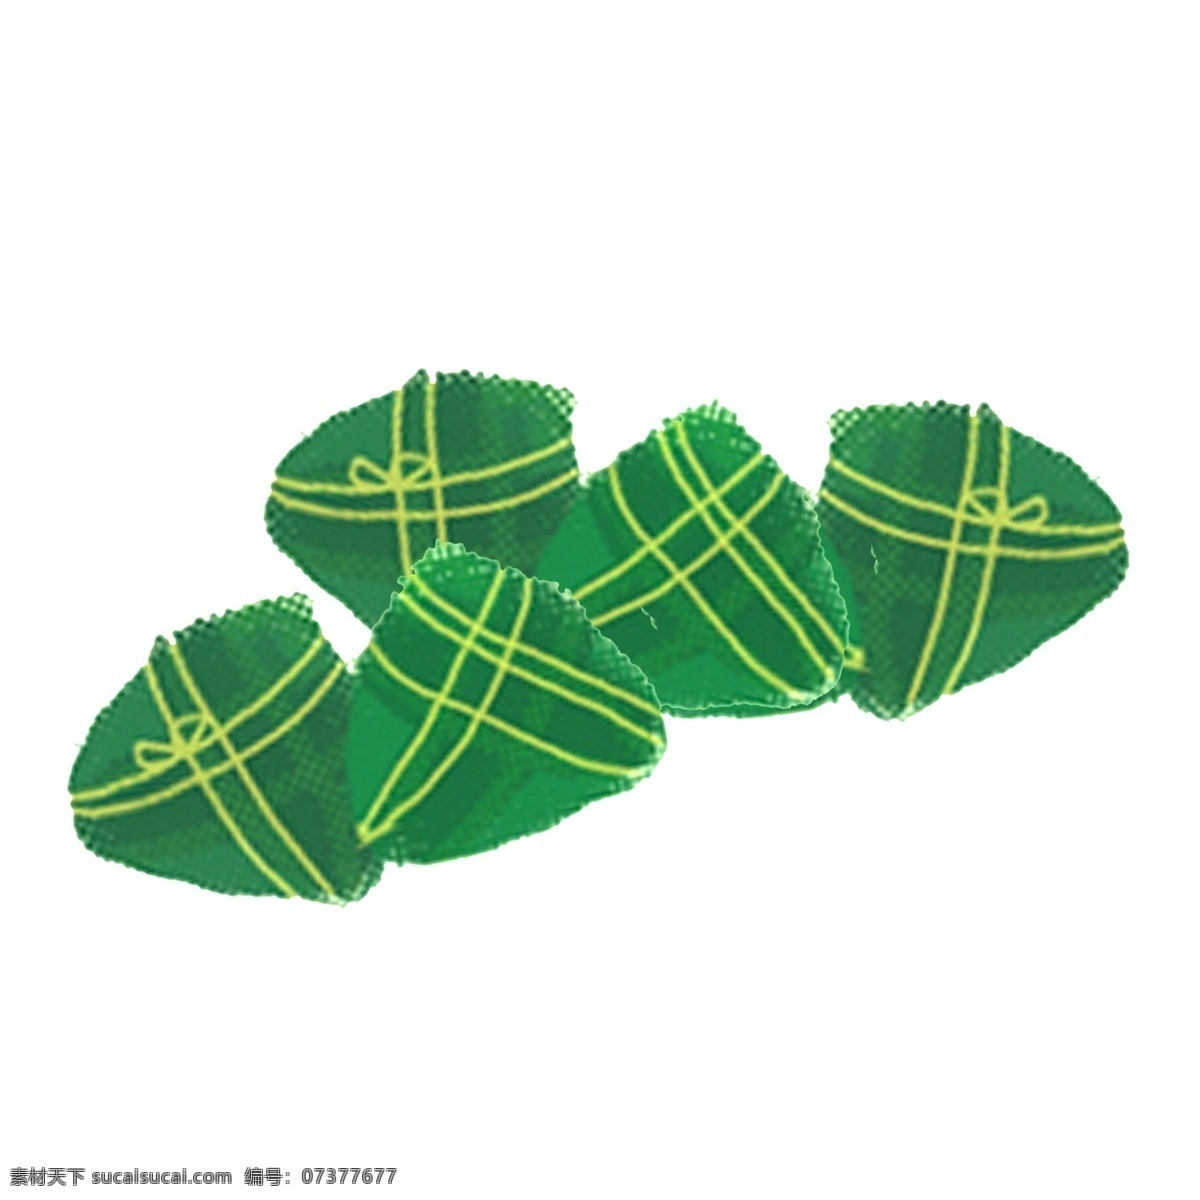 端午节 粽子 插画 图案 绿色 食物 卡通 彩色 小清新 创意 手绘 绘画元素 现代 简约 装饰